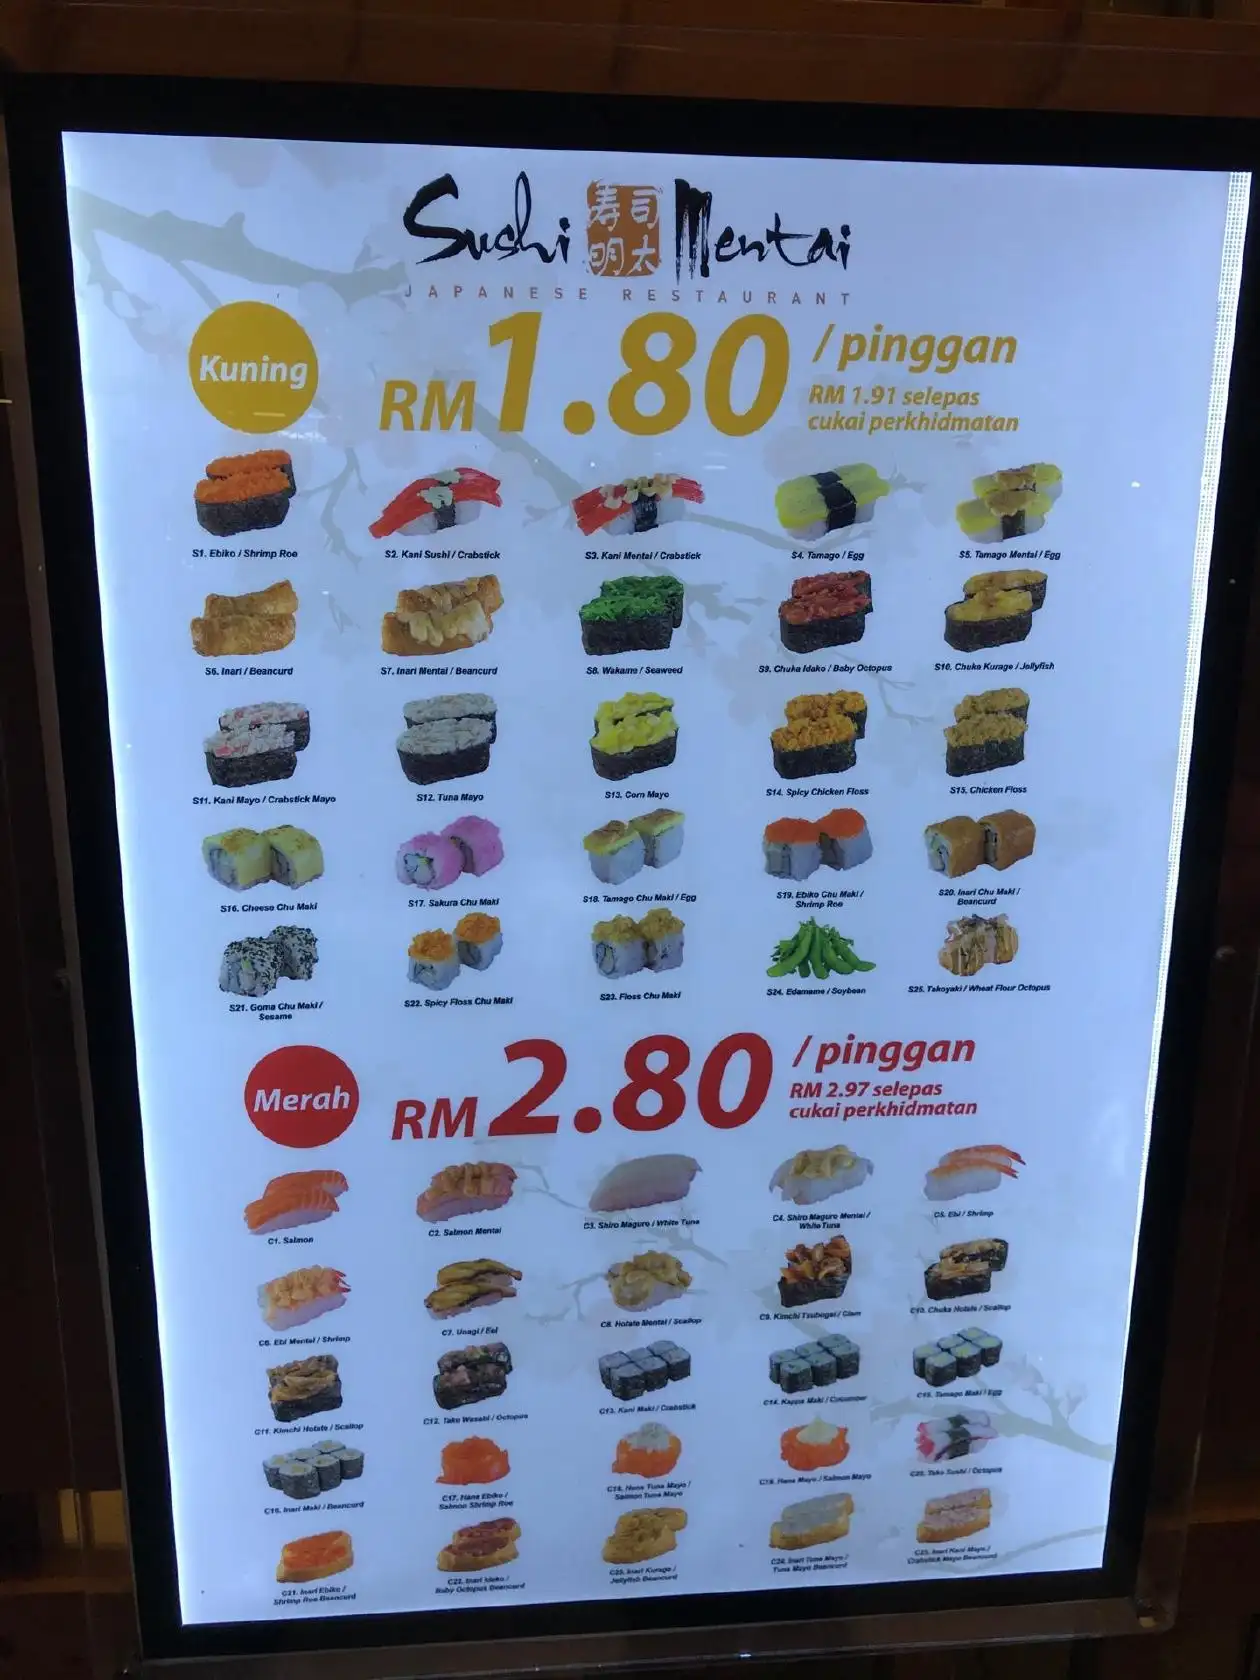 Sushi Mentai @ Taman Megah